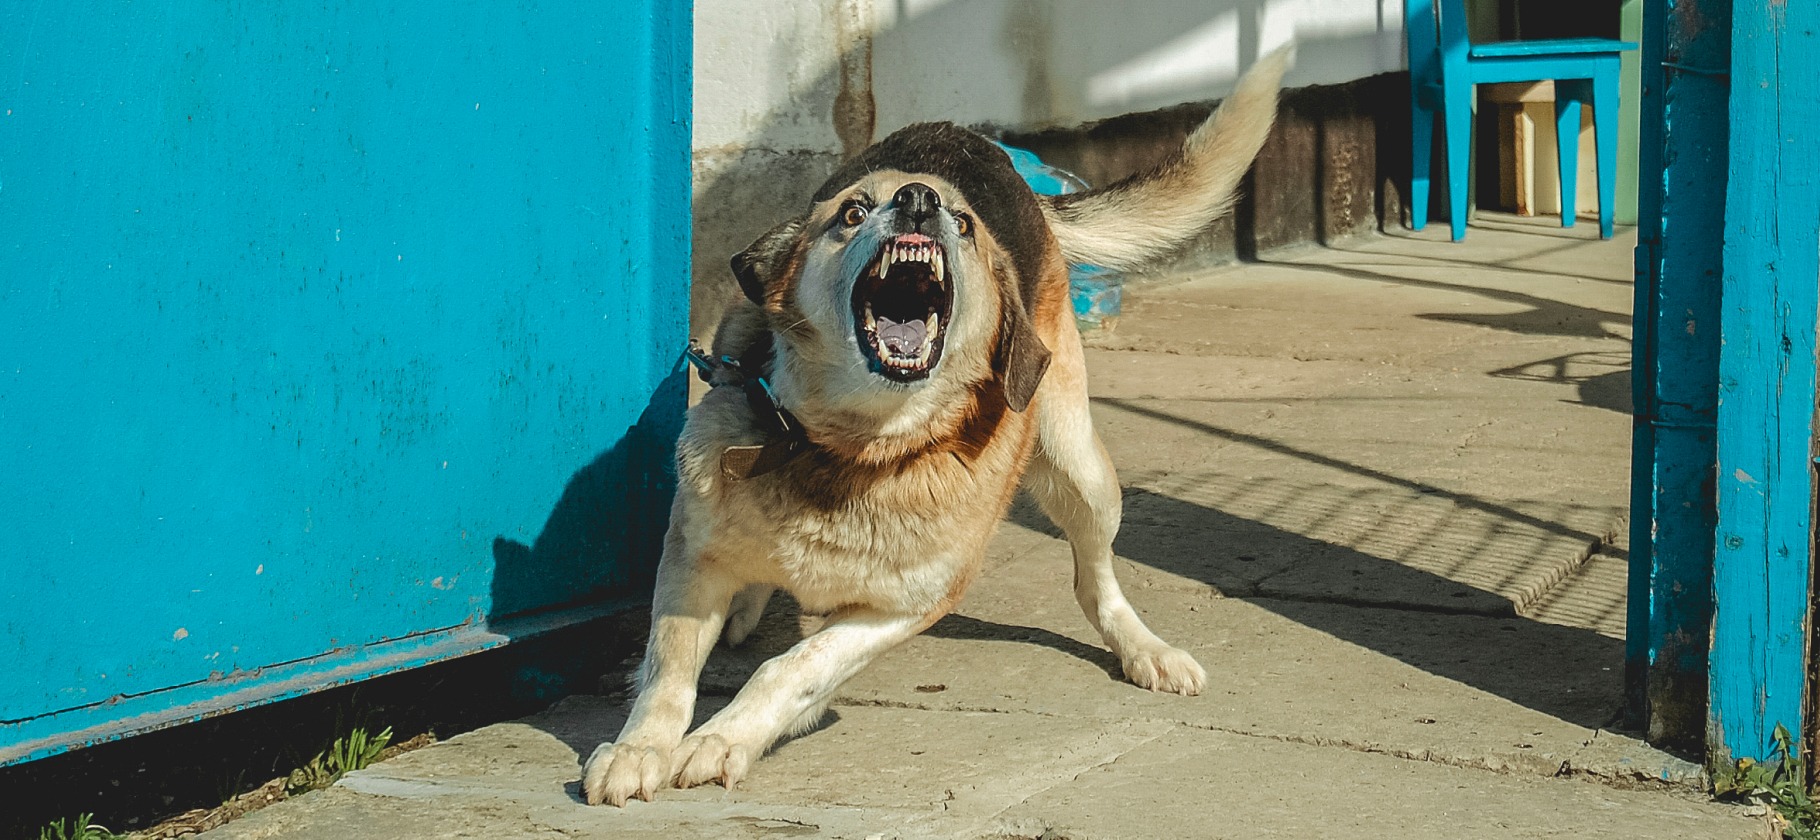 «Нападали как до­маш­ние, так и стаи»: 5 си­ту­аций, после которых можно начать бояться собак